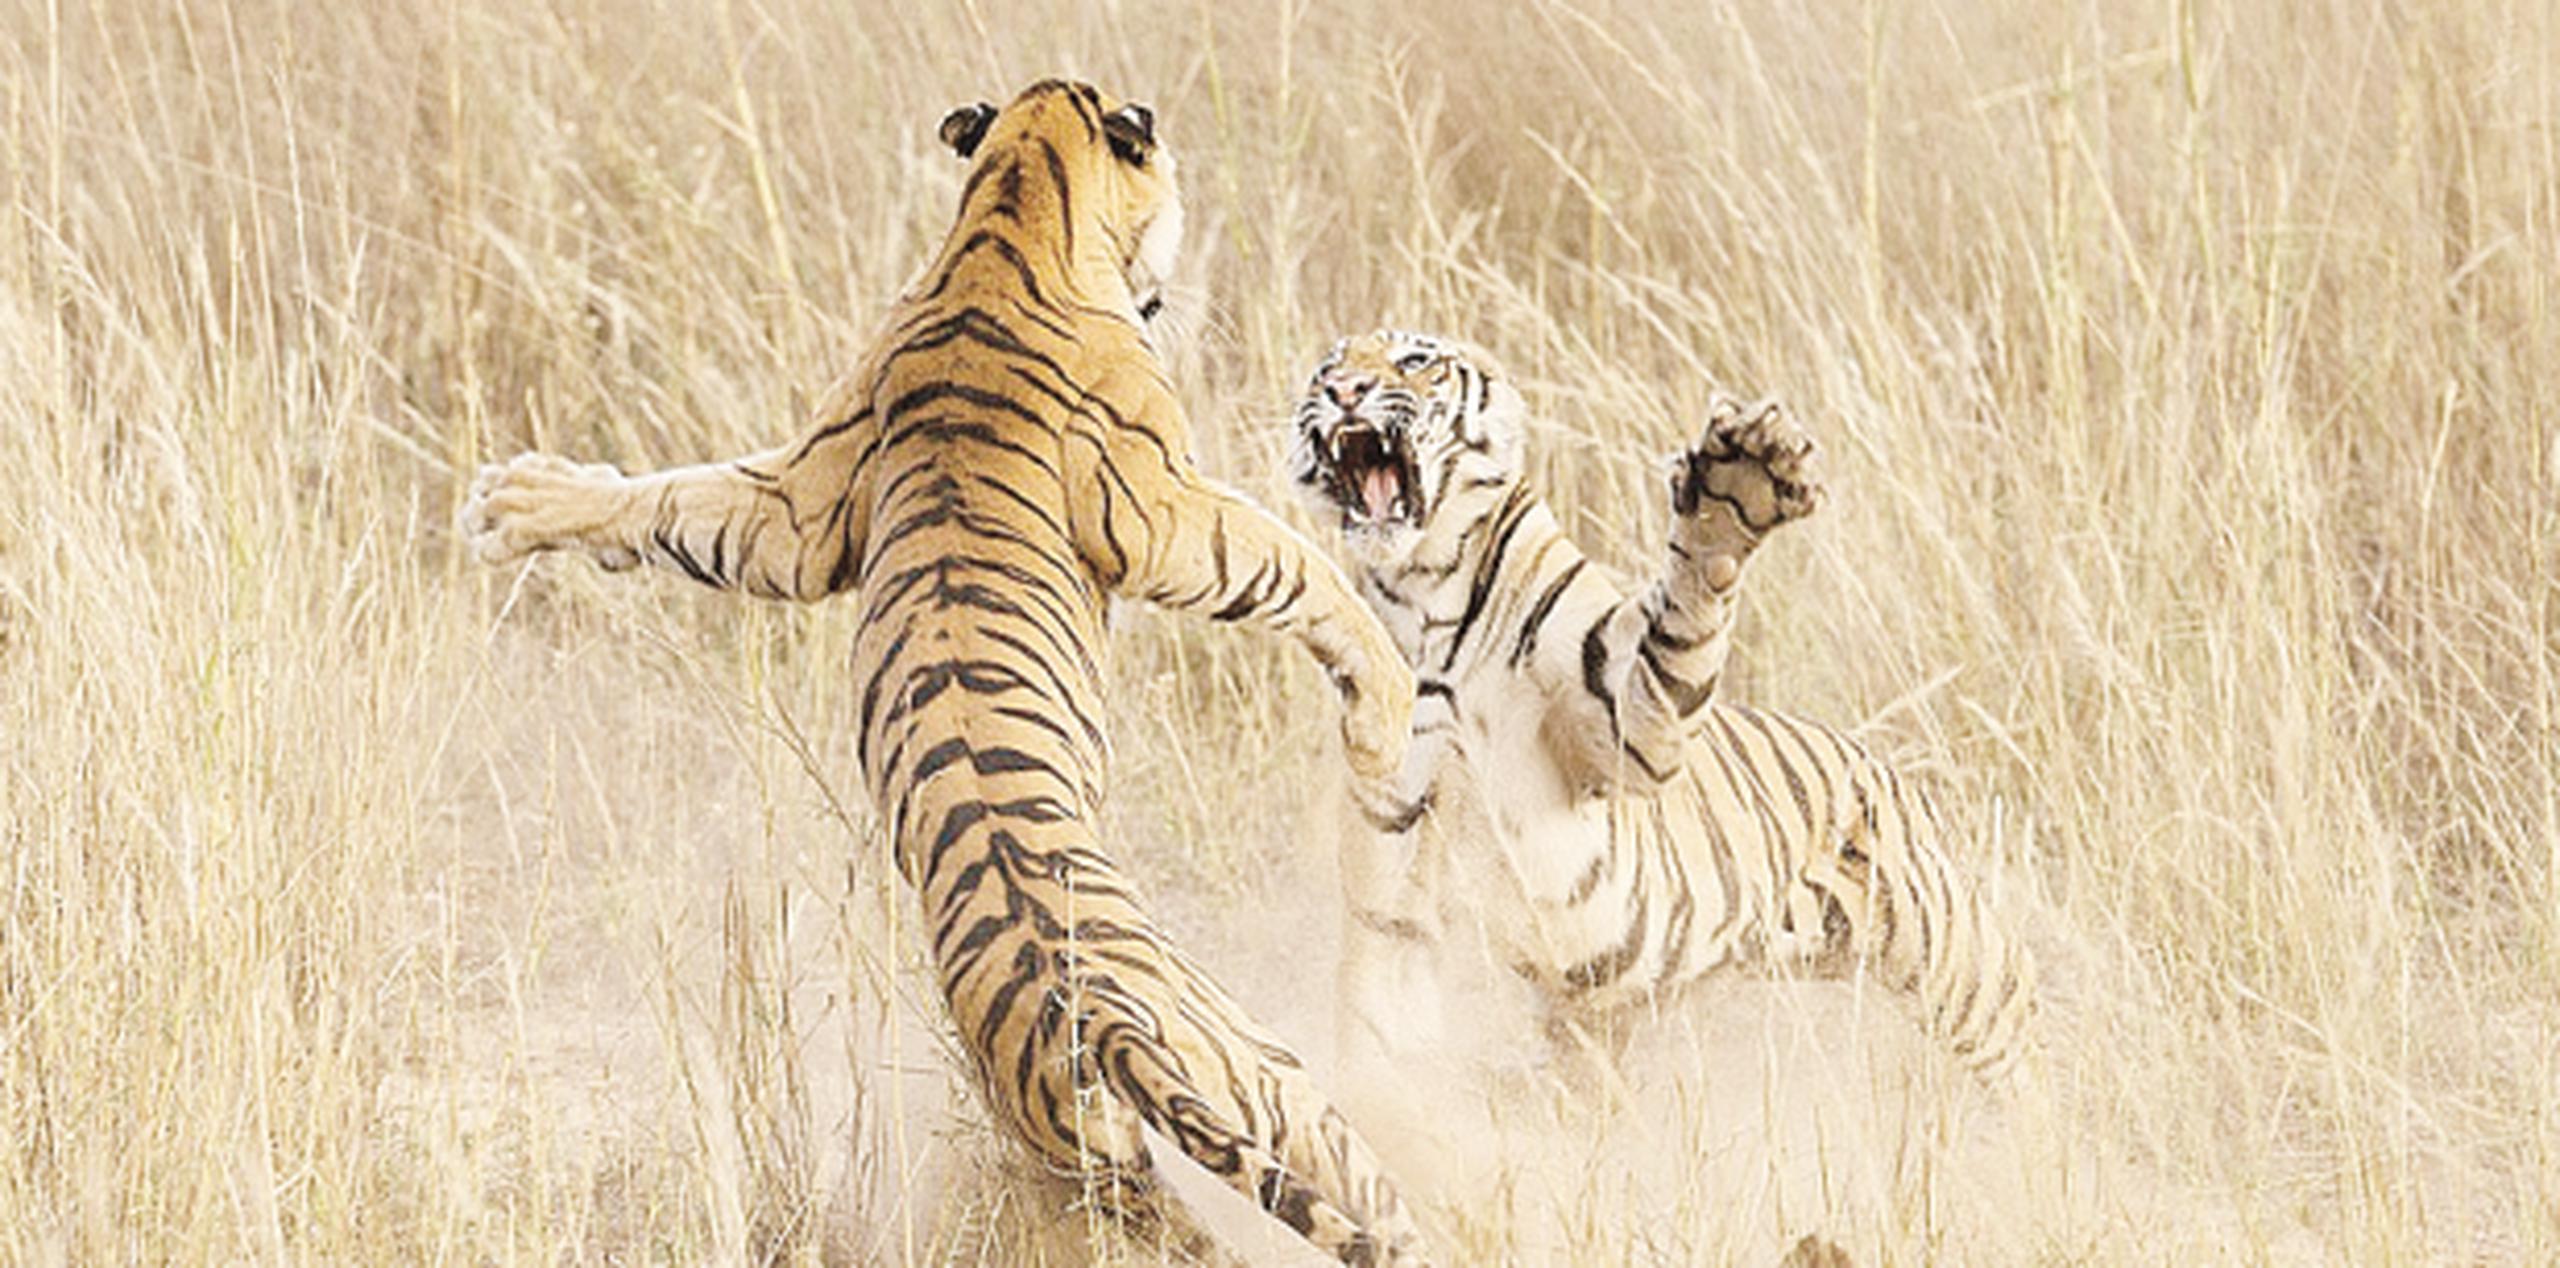 Los tigres son considerados como una especie en peligro. (Archivo)